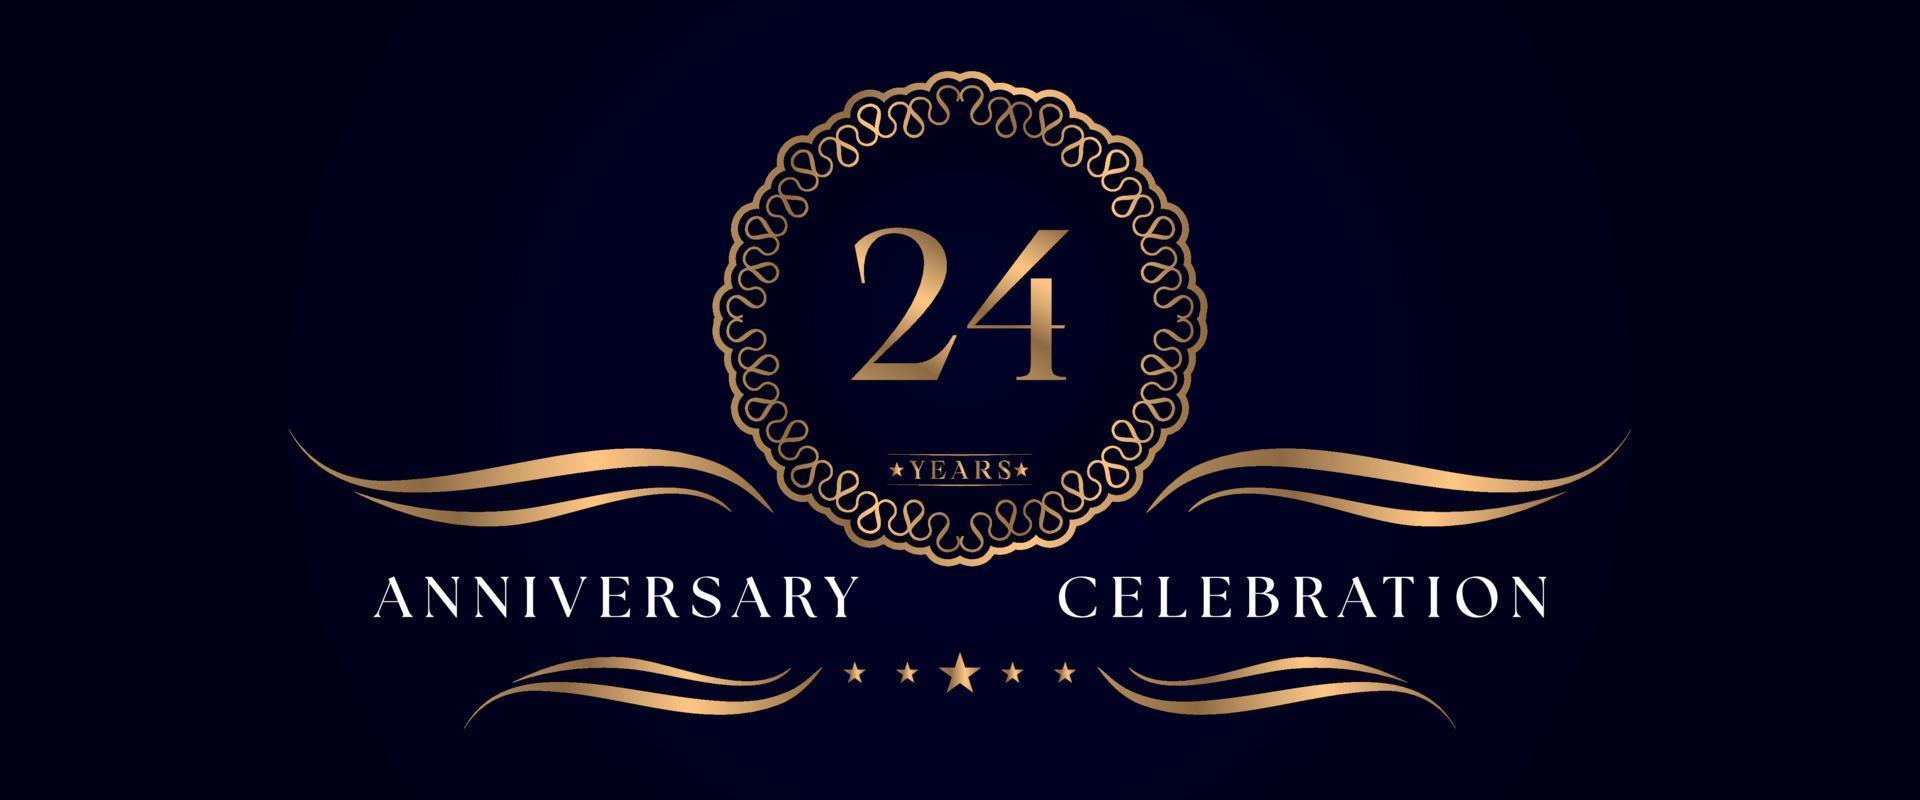 24 Jahre Jubiläumsfeier mit elegantem Kreisrahmen isoliert auf dunkelblauem Hintergrund. vektordesign für grußkarte, geburtstagsfeier, hochzeit, eventparty, zeremonie. Logo zum 24-jährigen Jubiläum. vektor